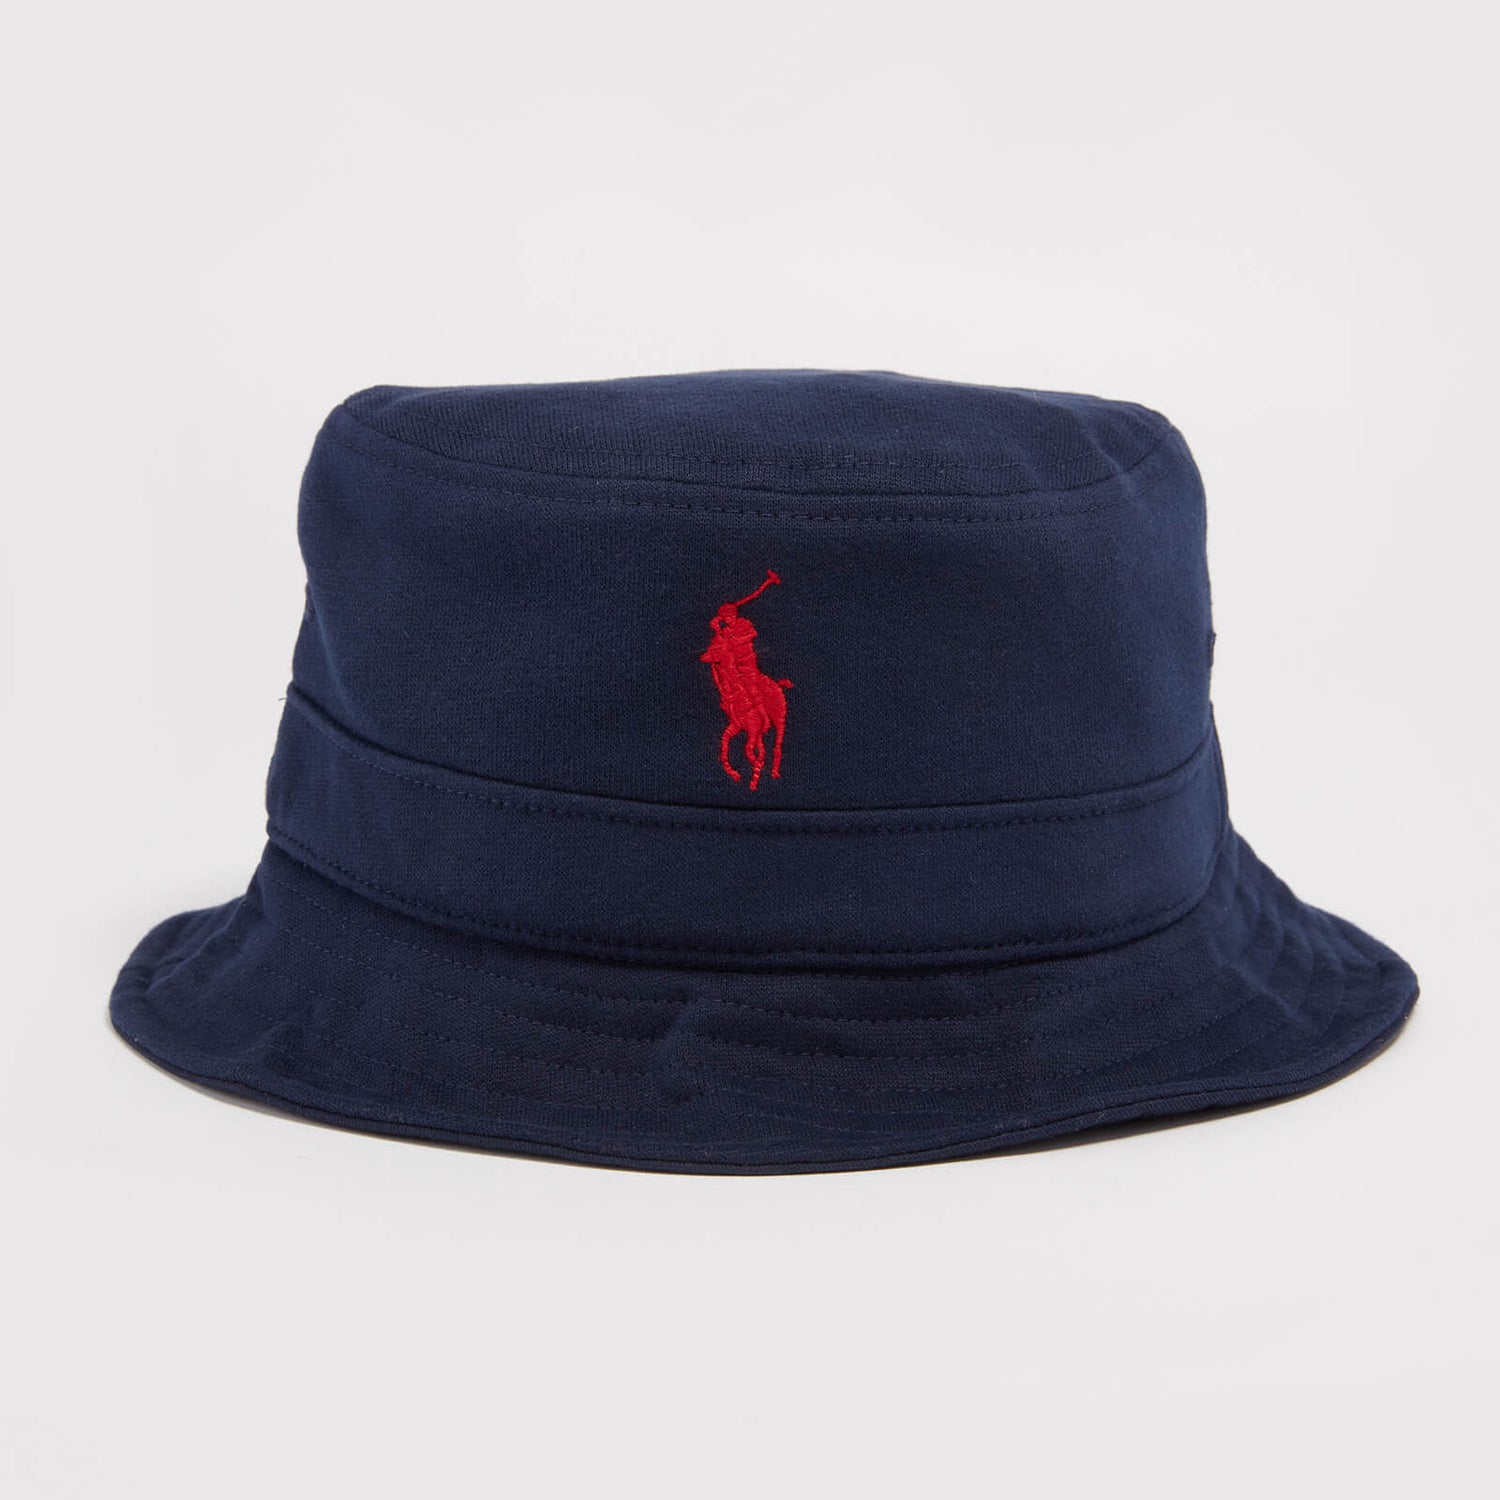 Ralph Lauren Loft Embroidered Logo Cotton Bucket Hat - S/M